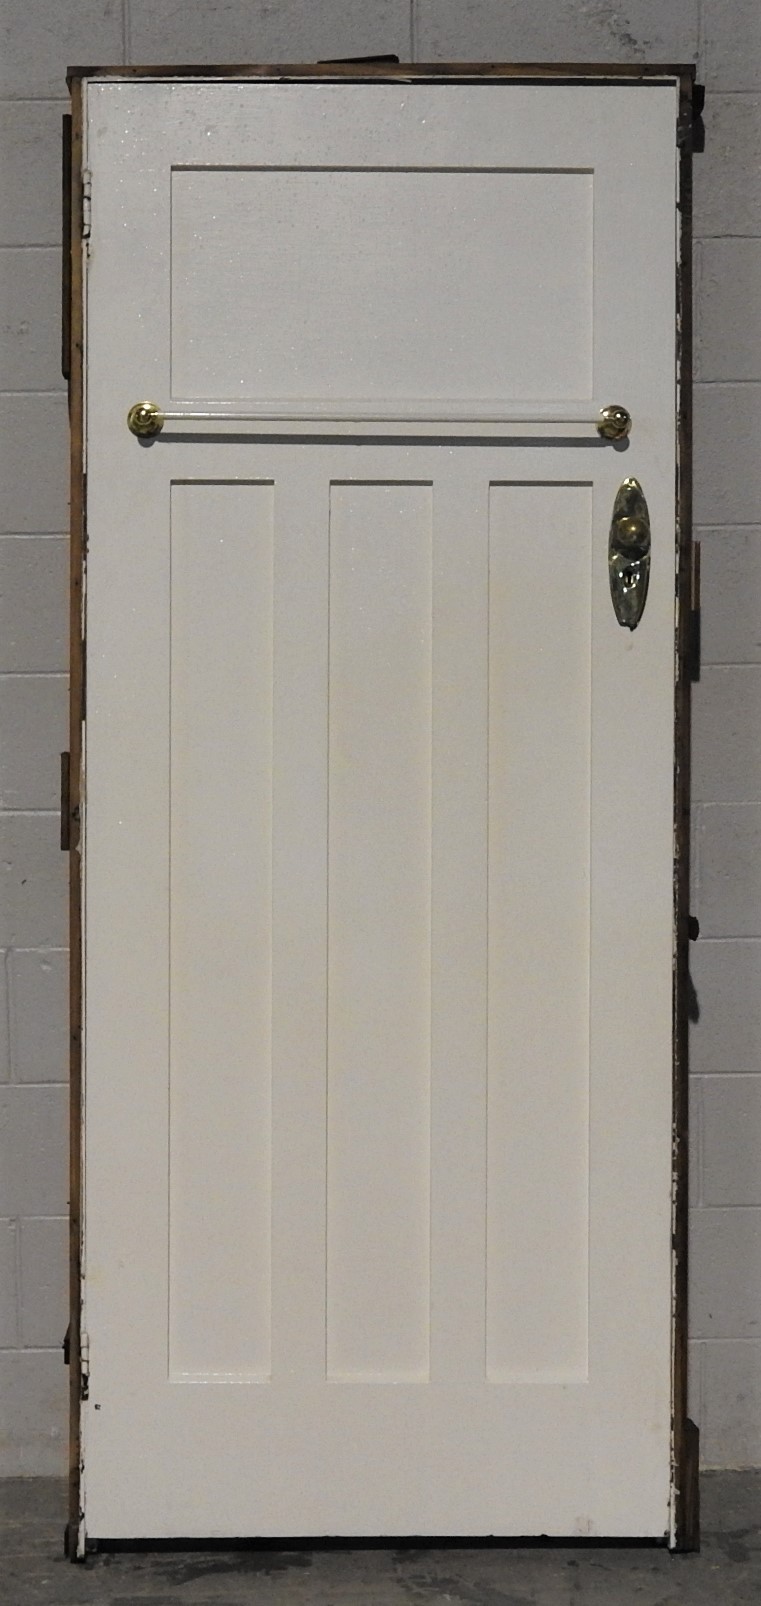 Wooden Bungalow 3 panel Door hung in frame / jamb